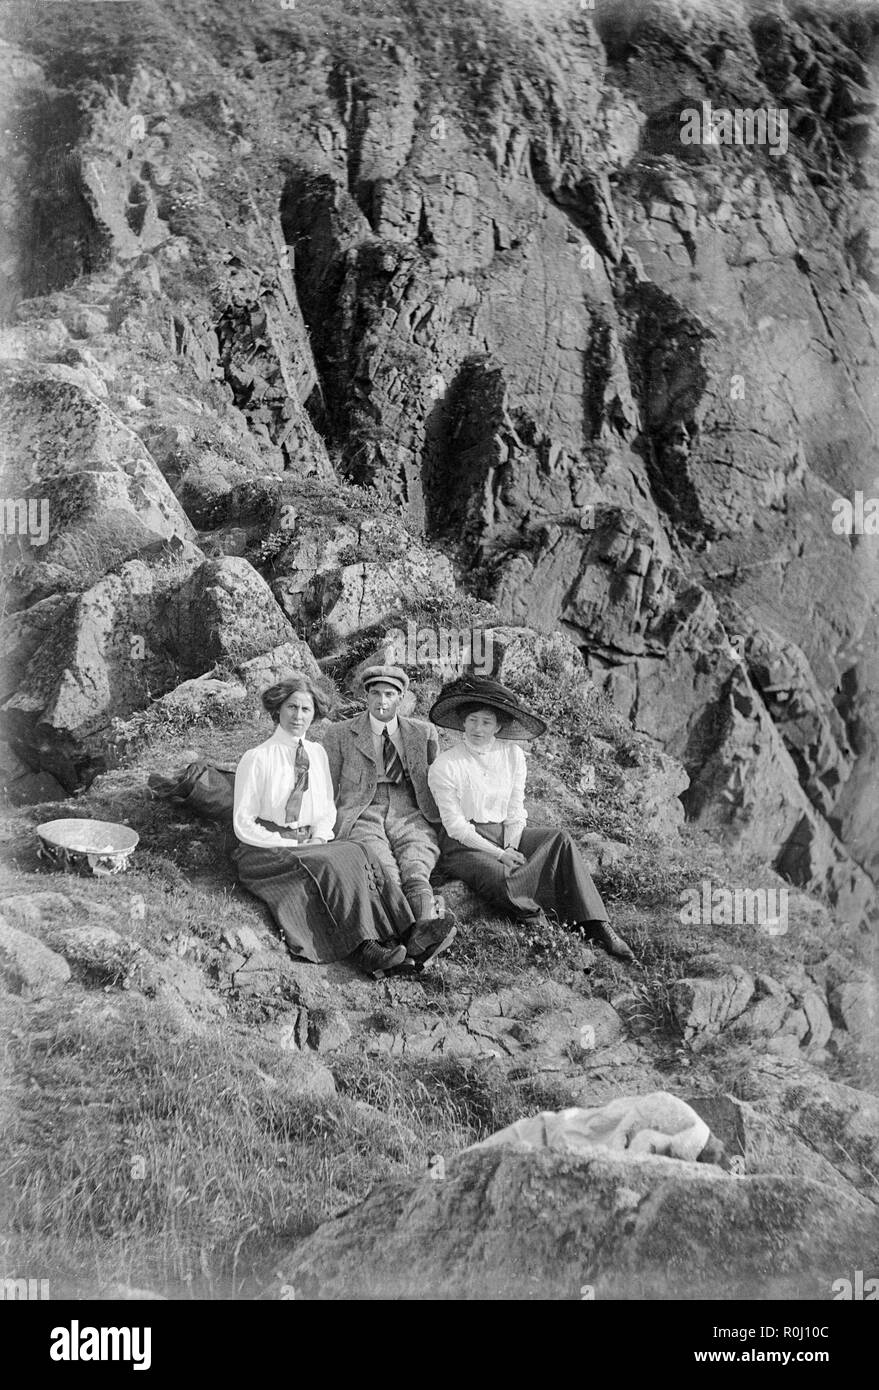 Edwardian schwarz-weiß Foto, ein junger Mann und zwei junge Frauen, sitzen auf dem Boden einer felsigen Klippe, irgendwo in England. Alle tragen Kleidung in guter Qualität der Ära. Eine Frau trägt einen sehr großen Hut, typisch für die edwardianische Zeit. Stockfoto